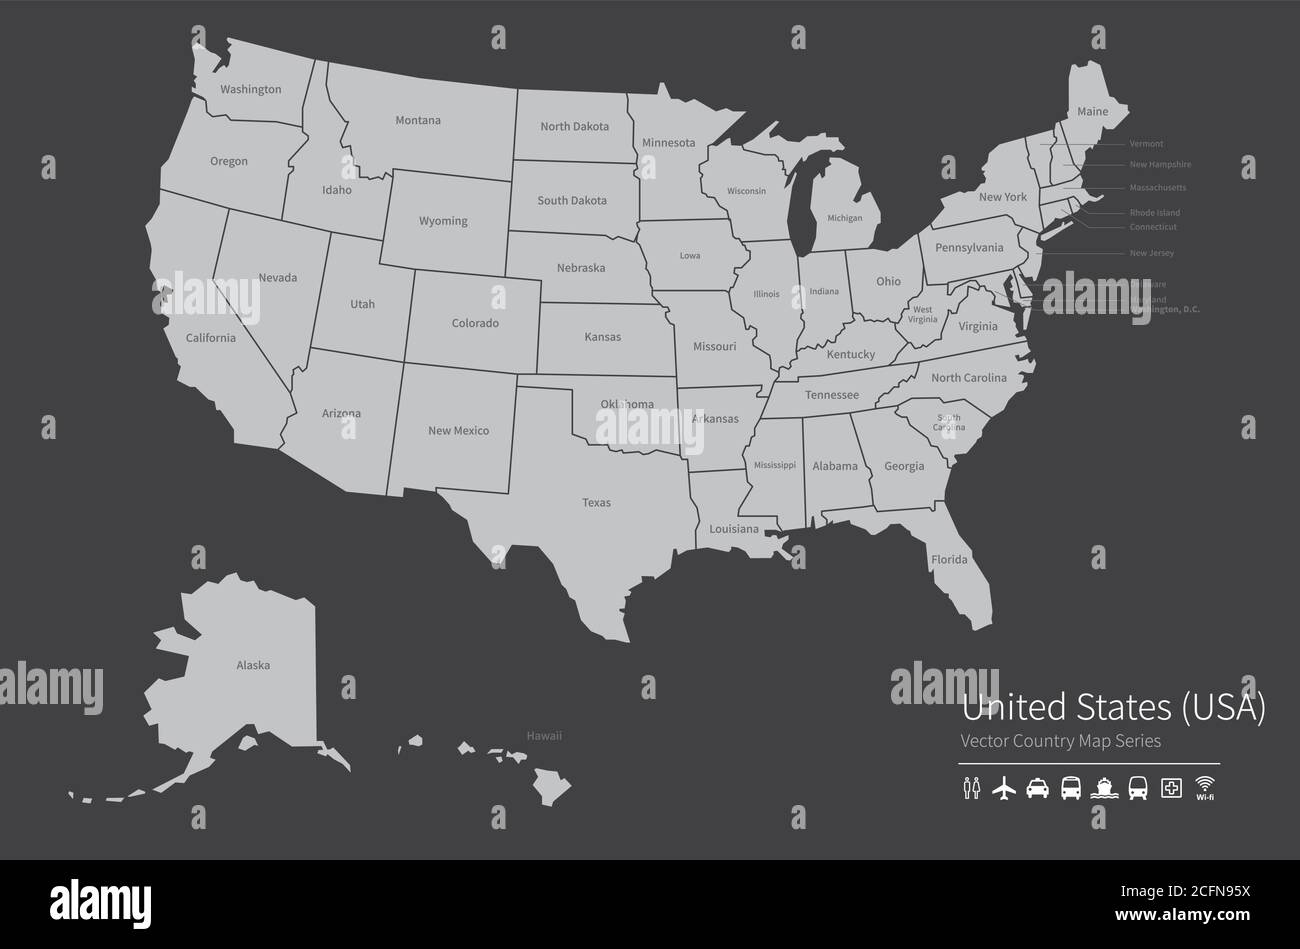 US-Karte. Nationale Karte der Welt. Grau gefärbte Länder Kartenserie. Stock Vektor